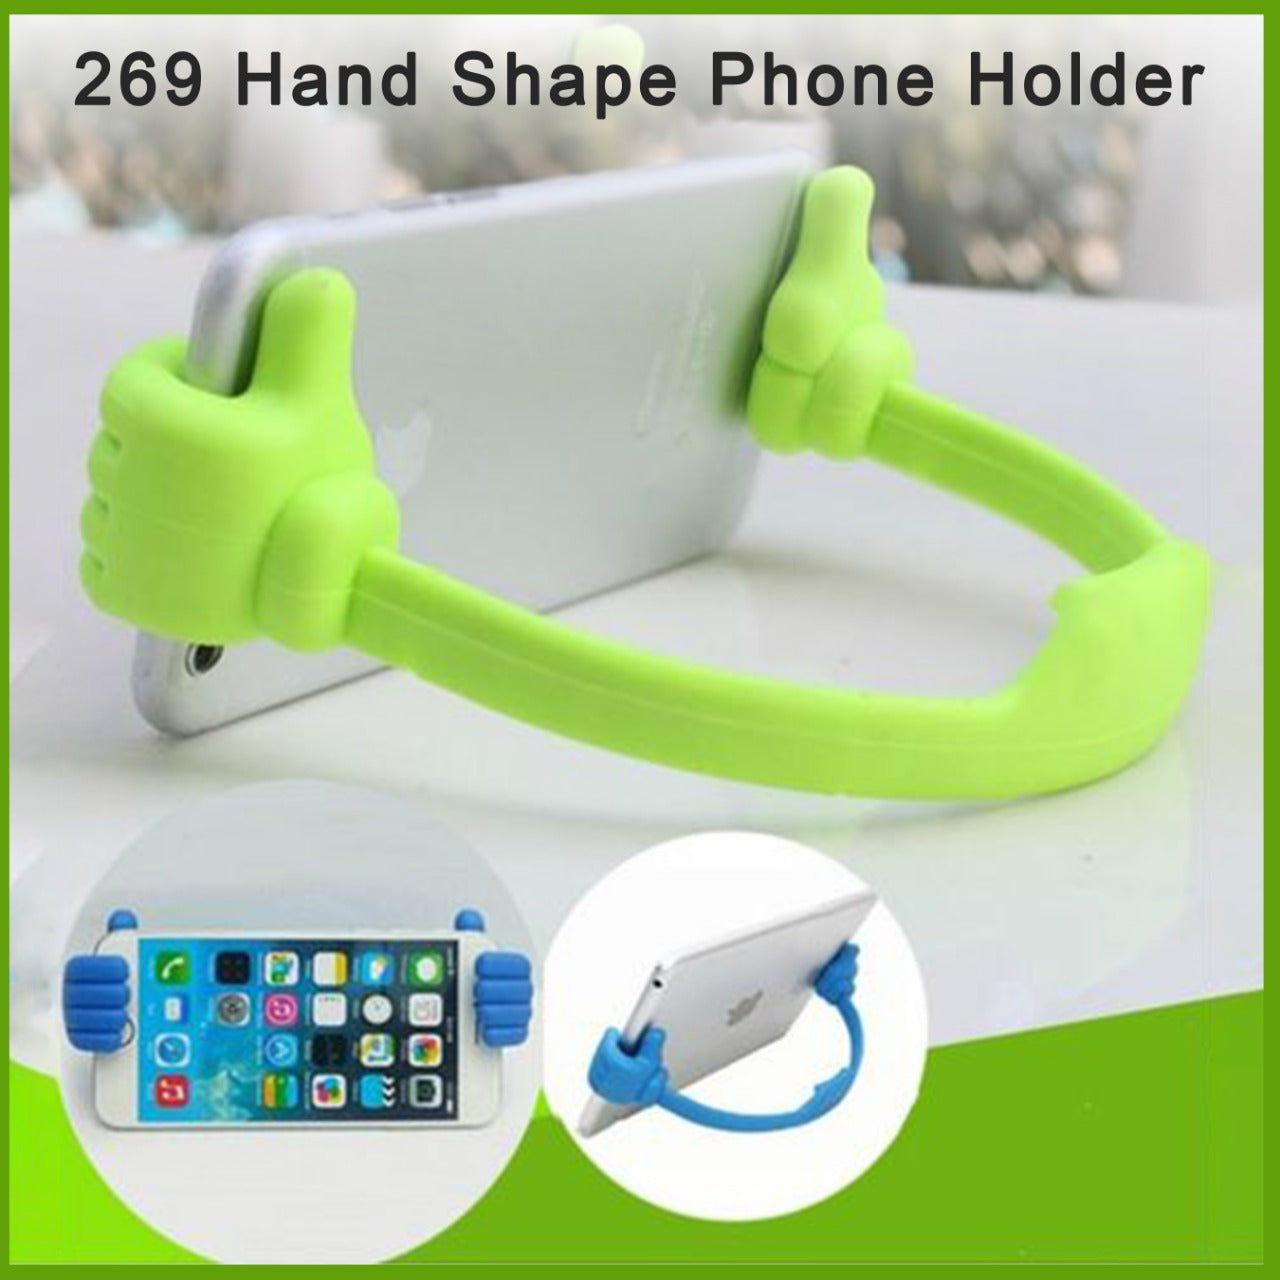 Hand Shape Phone Holder